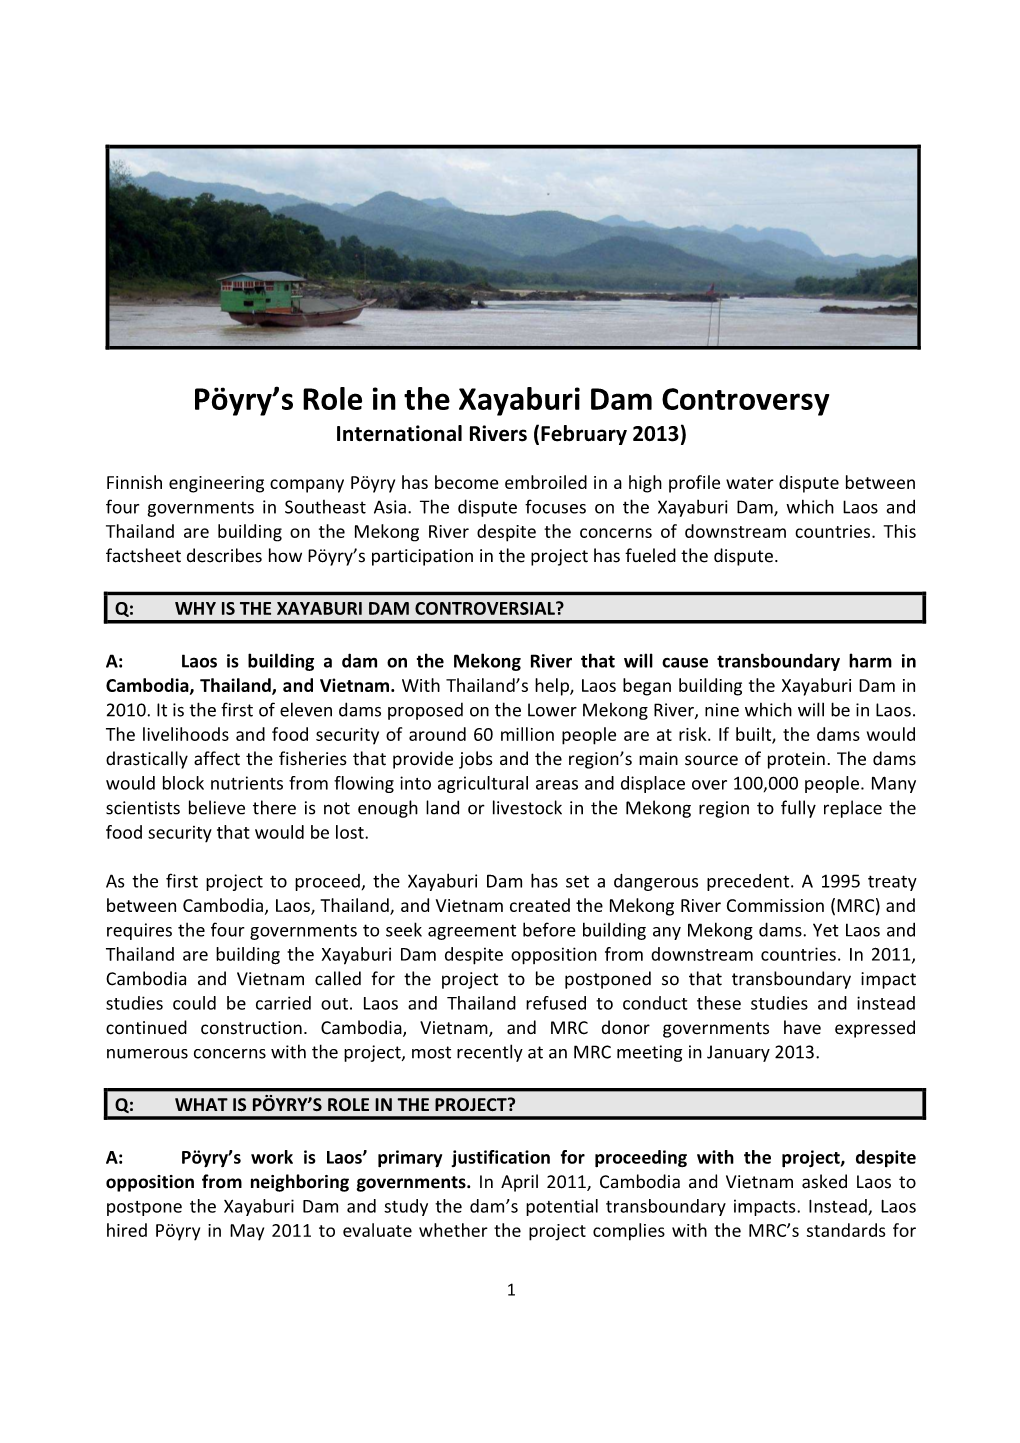 Factsheet on Poyry Role in Xayaburi